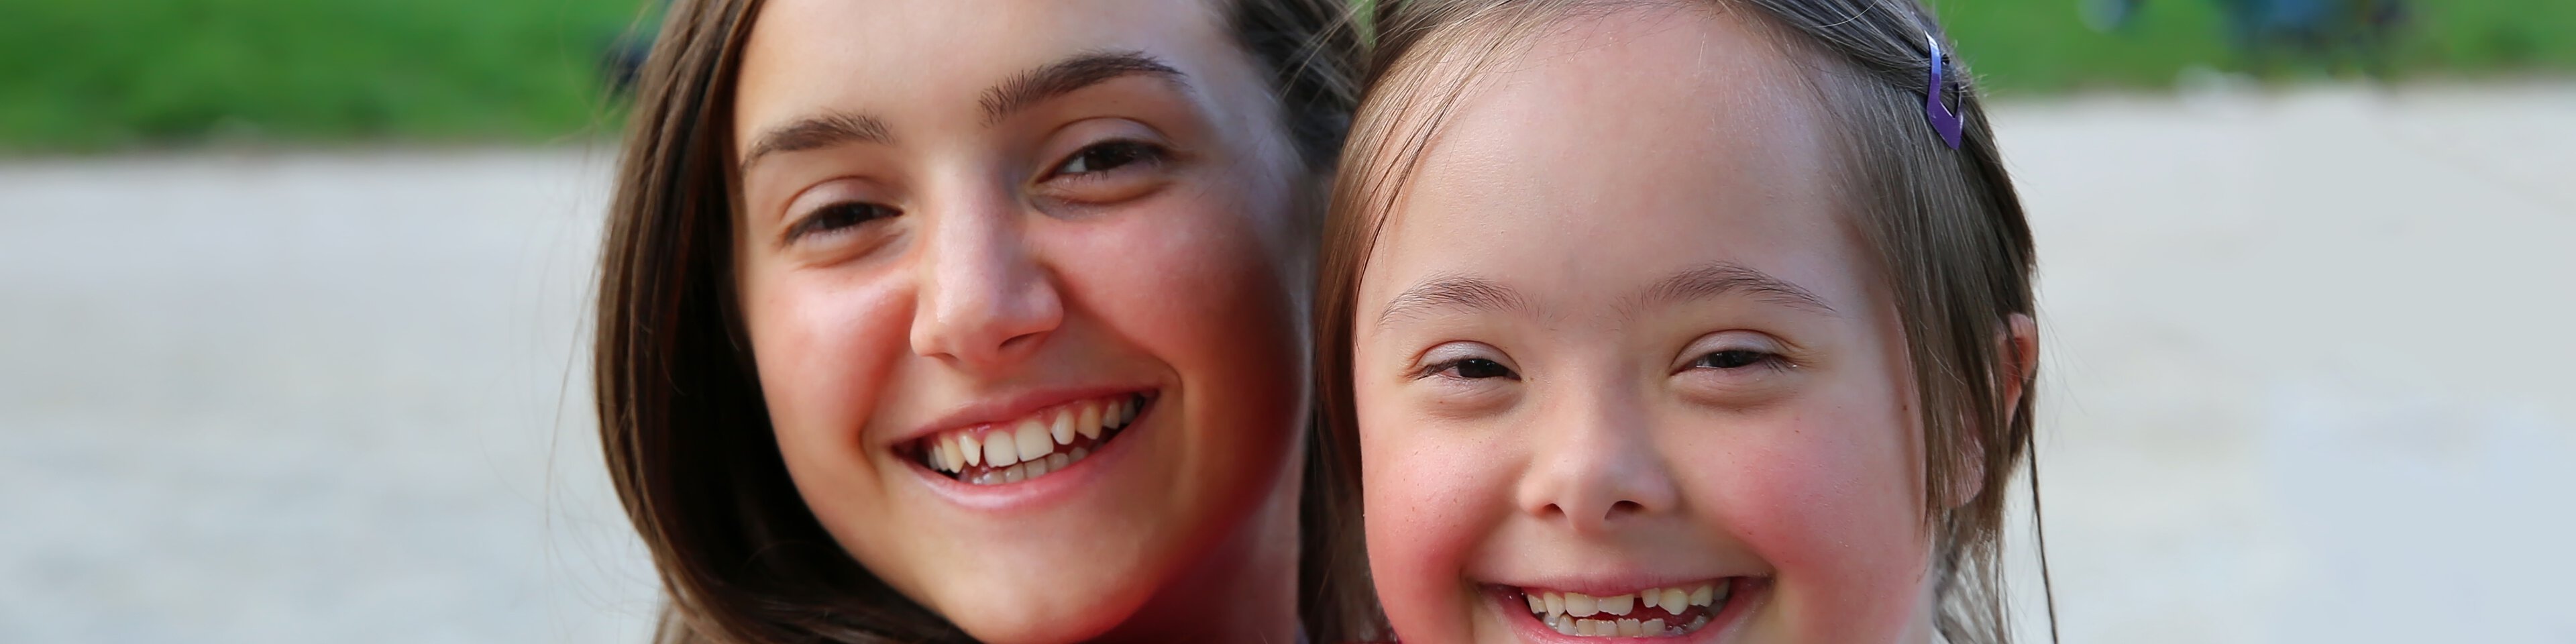 Zwei Mädchen lachen in die Kamera | © denys_kuvaiev - stock.adobe.com